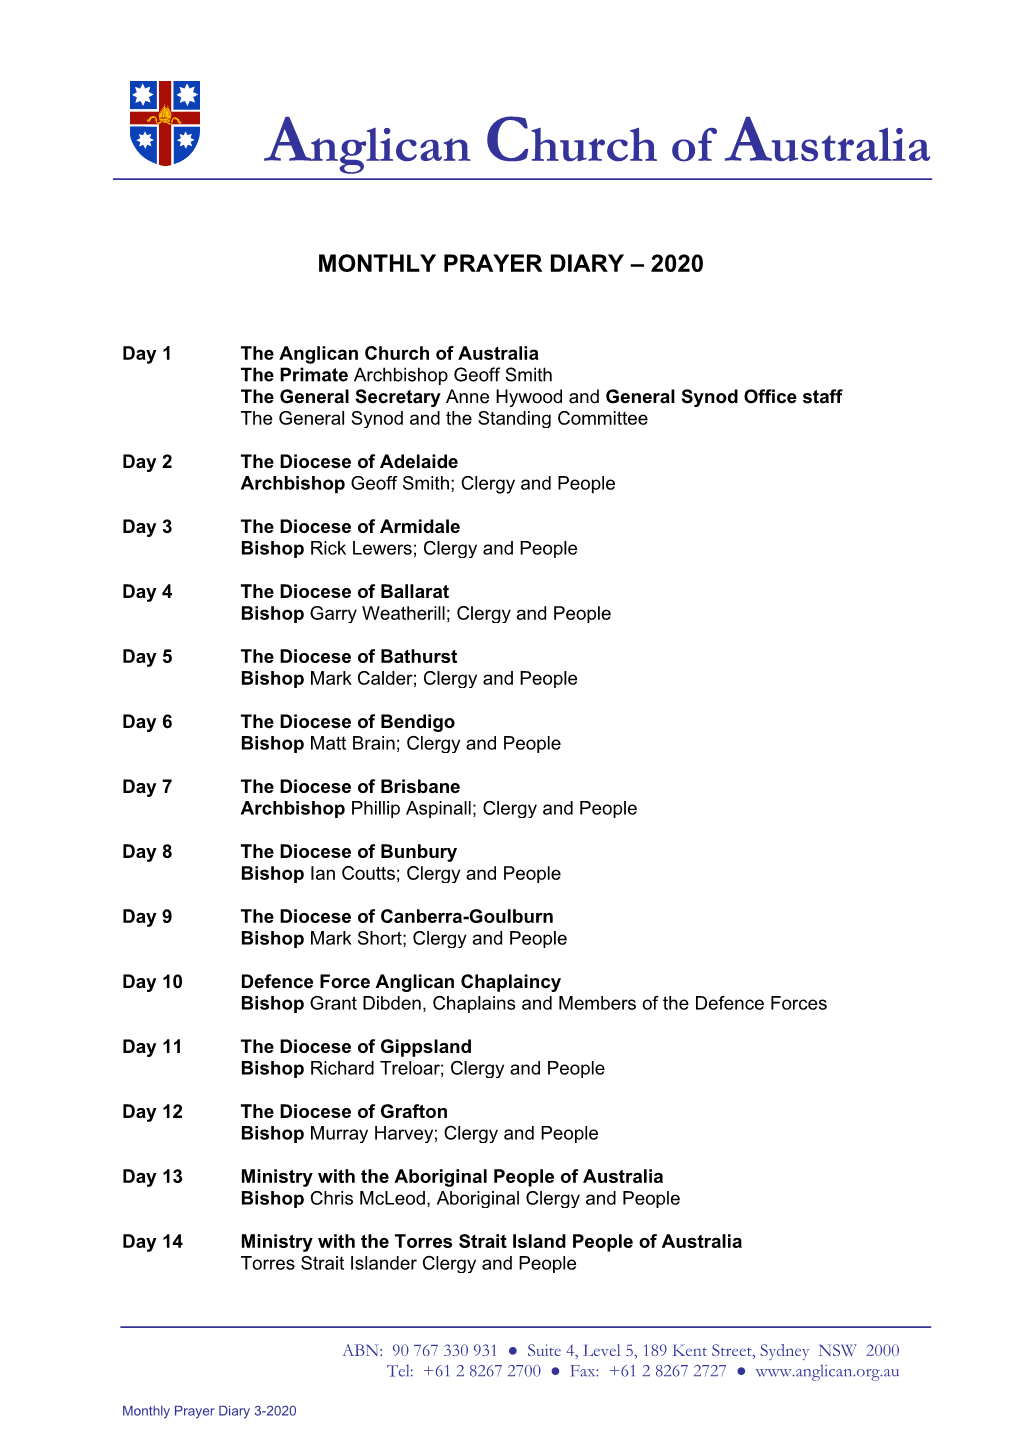 Monthly-Prayer-Diary-3-2020.Pdf